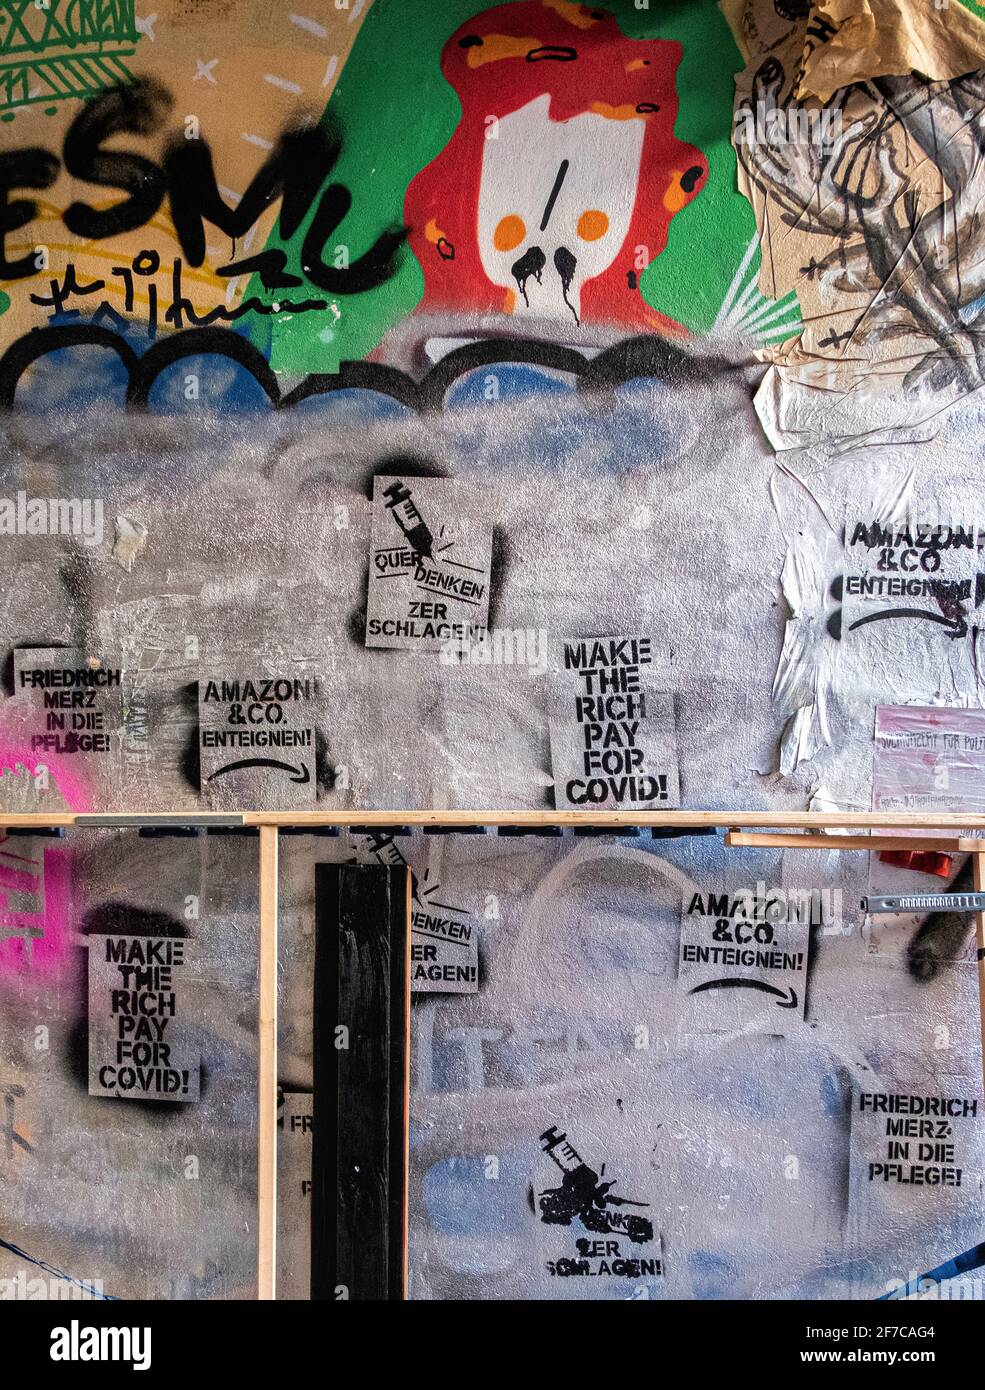 Schablonierte politische Botschaften auf einer mit Graffiti bedeckten Wand in Mitte, Berlin. Politische Schablone Stockfoto